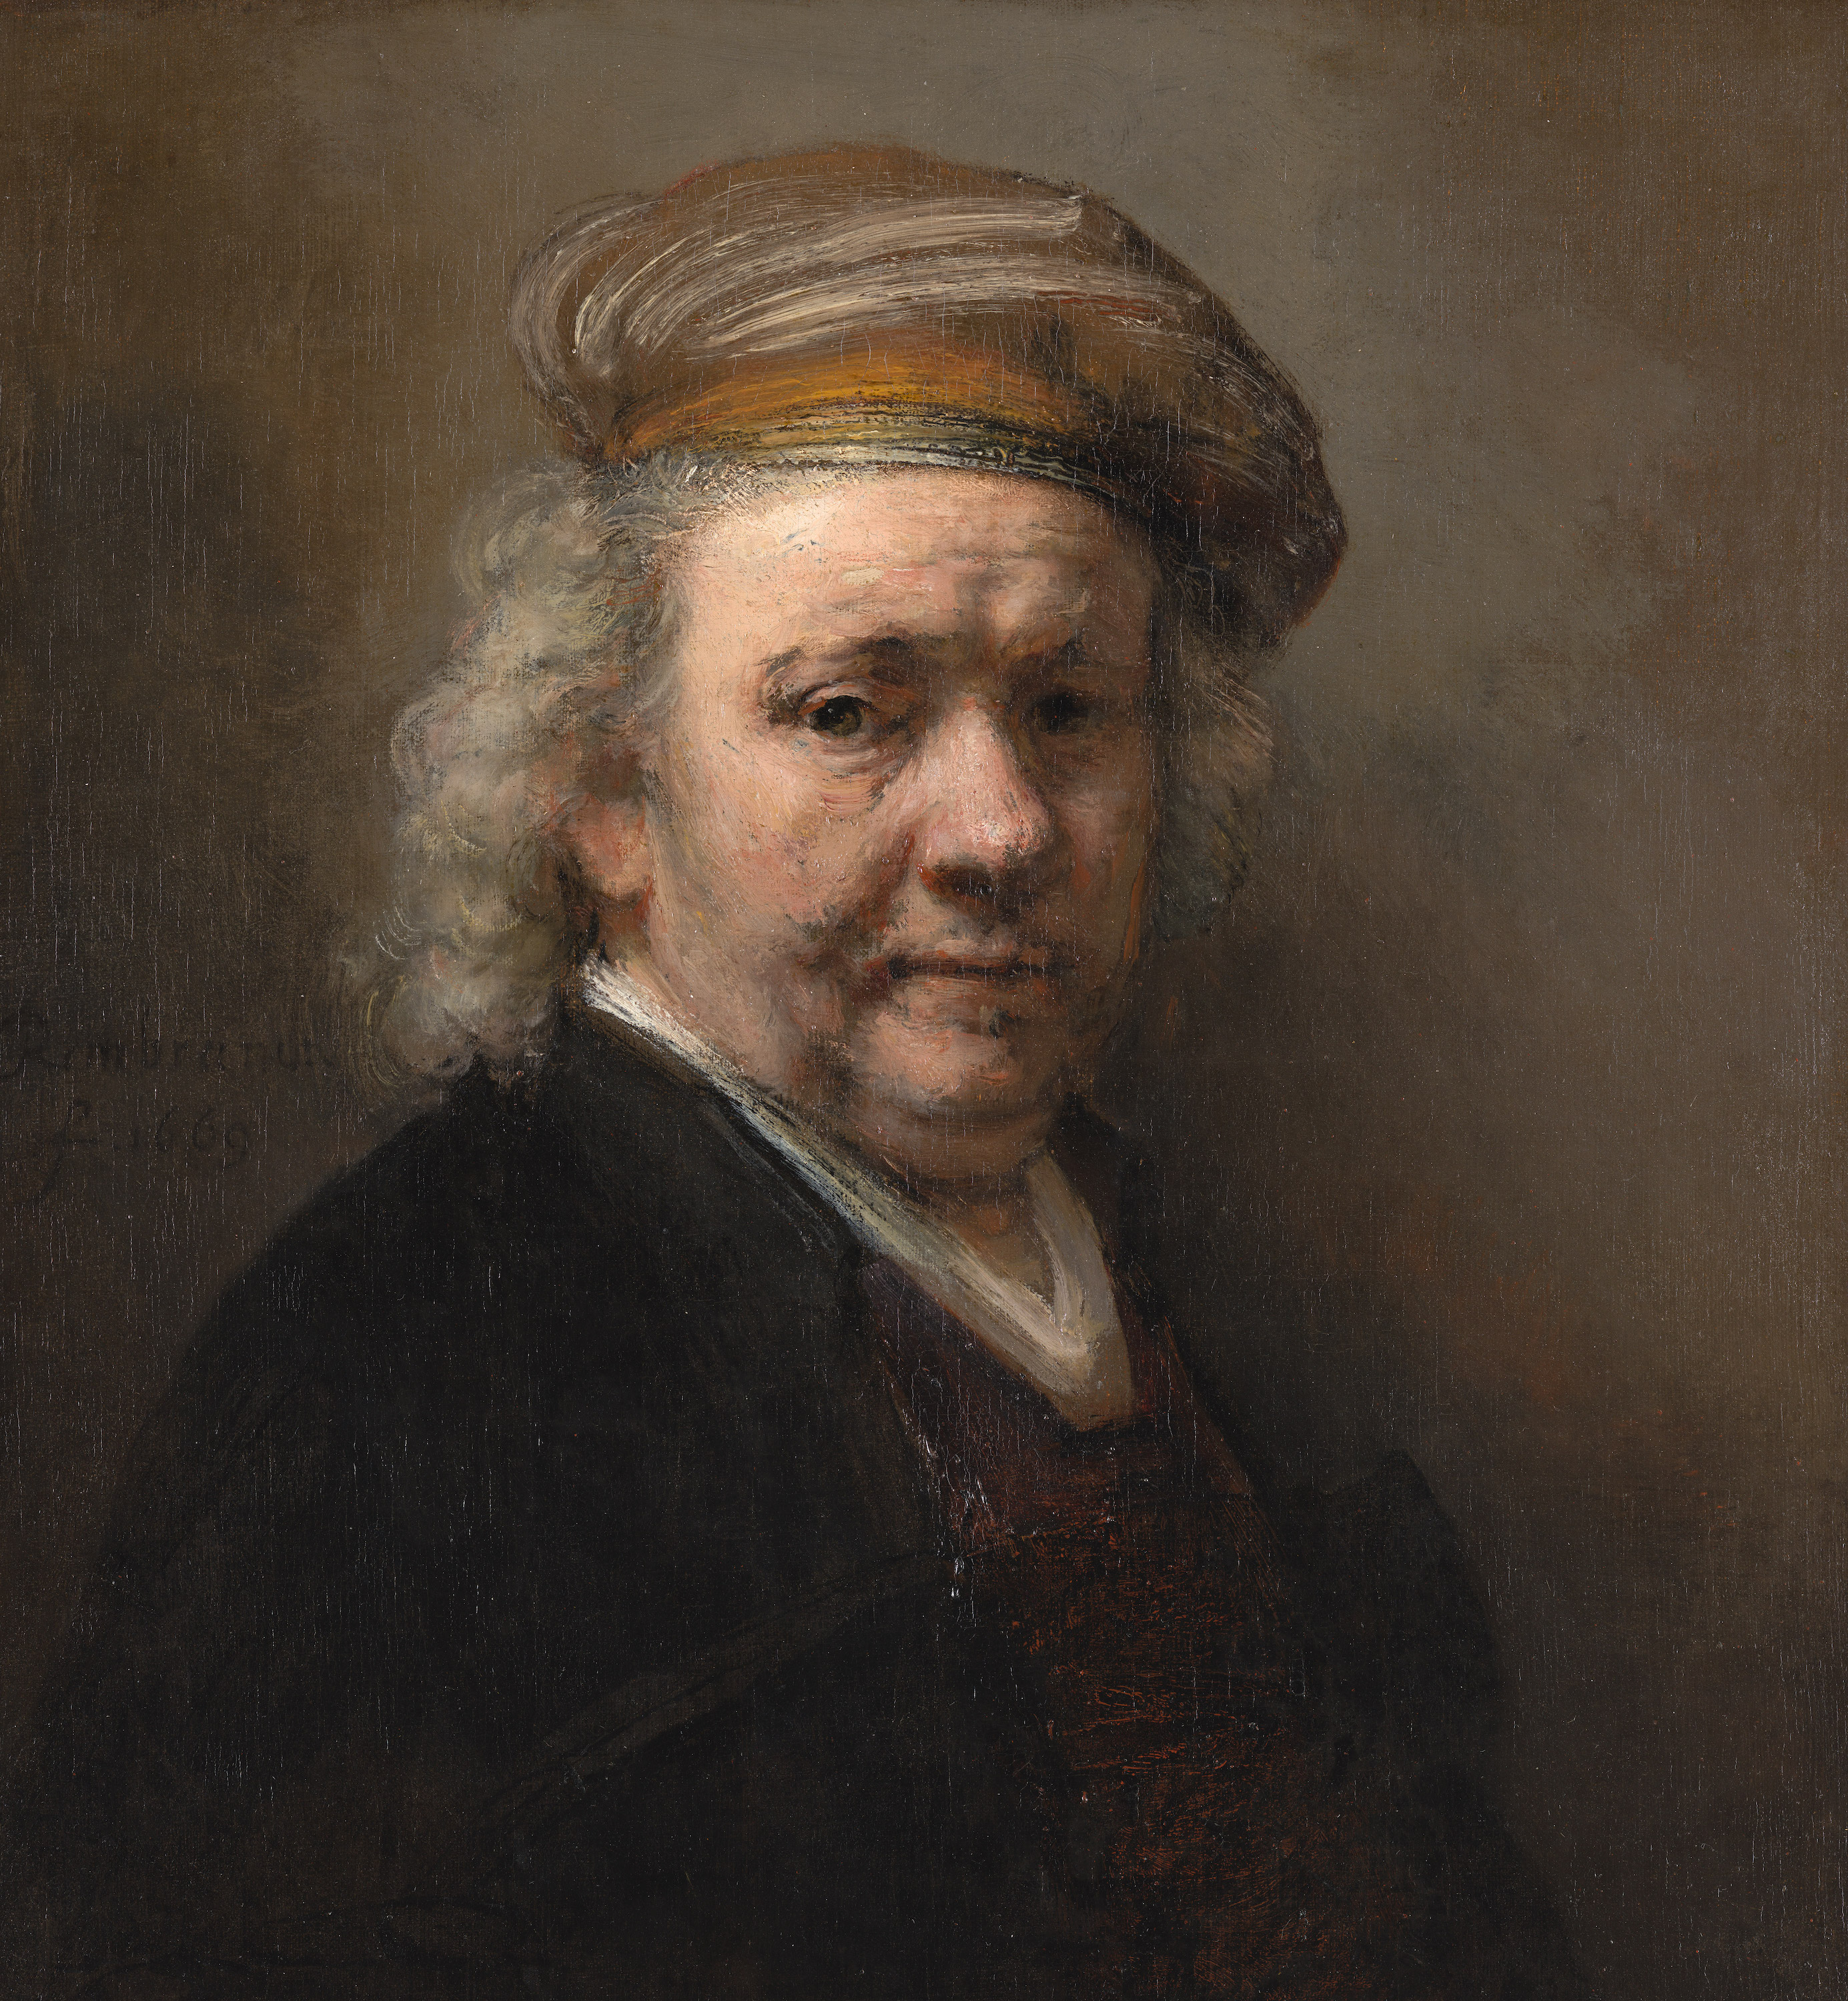 Autorretrato by Rembrandt van Rijn - 1669 - 65,4 x 60,2 cm Mauritshuis, La Haya